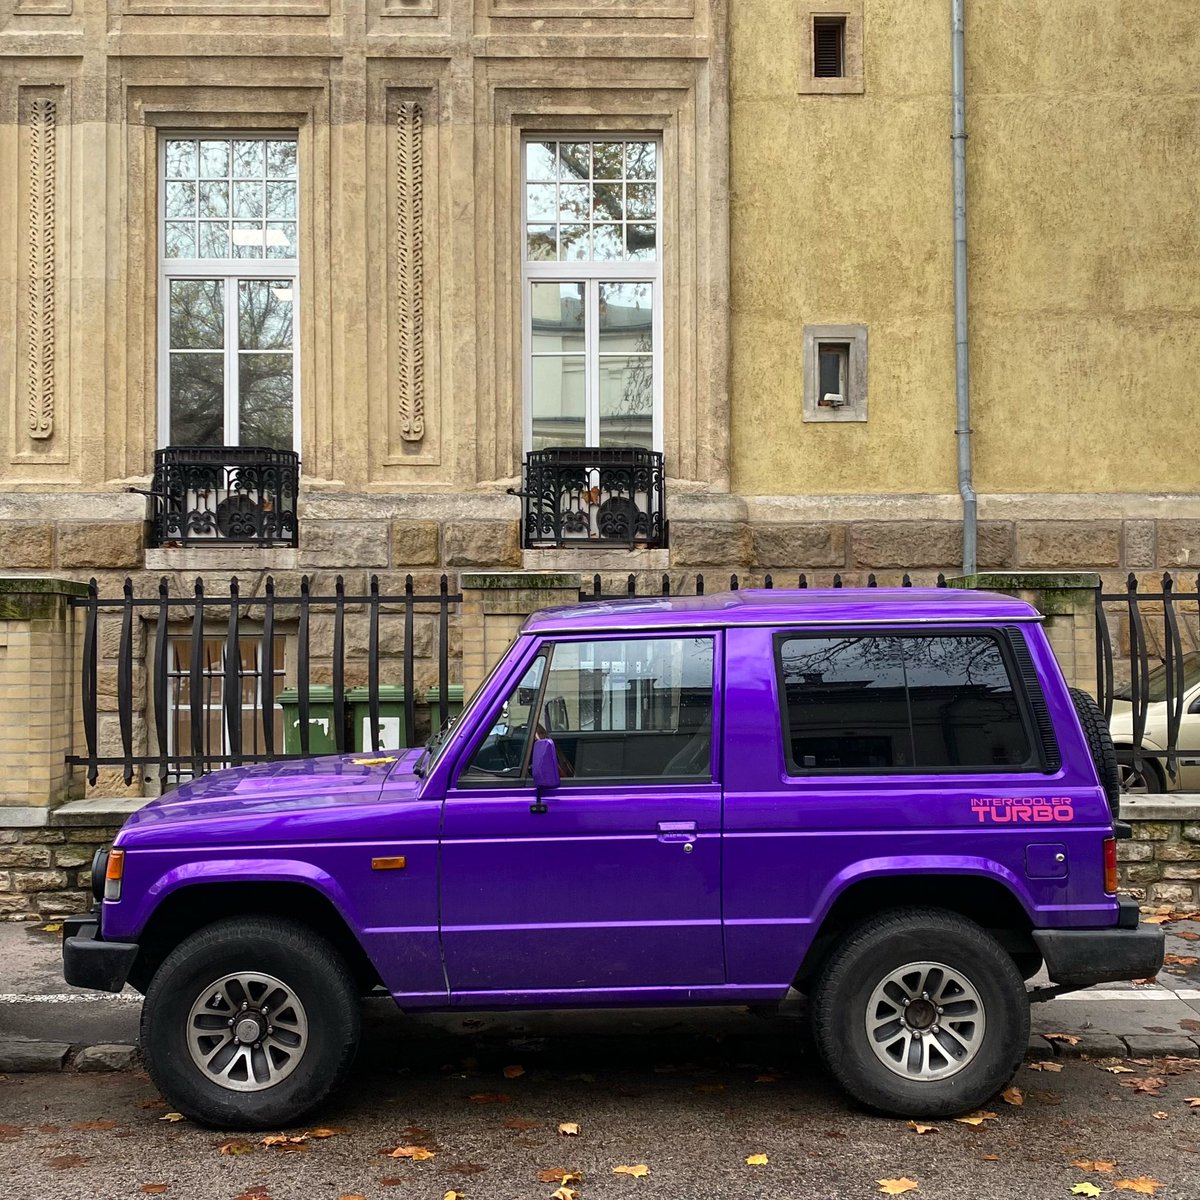 No more boring colours
Mitsubishi Pajero (1st gen, 1992) spotted in Budapest.
#MitsubishiPajero #Pajero 
@GeorgeCochrane1 @addict_car @MitsubishiUK @mitsucars